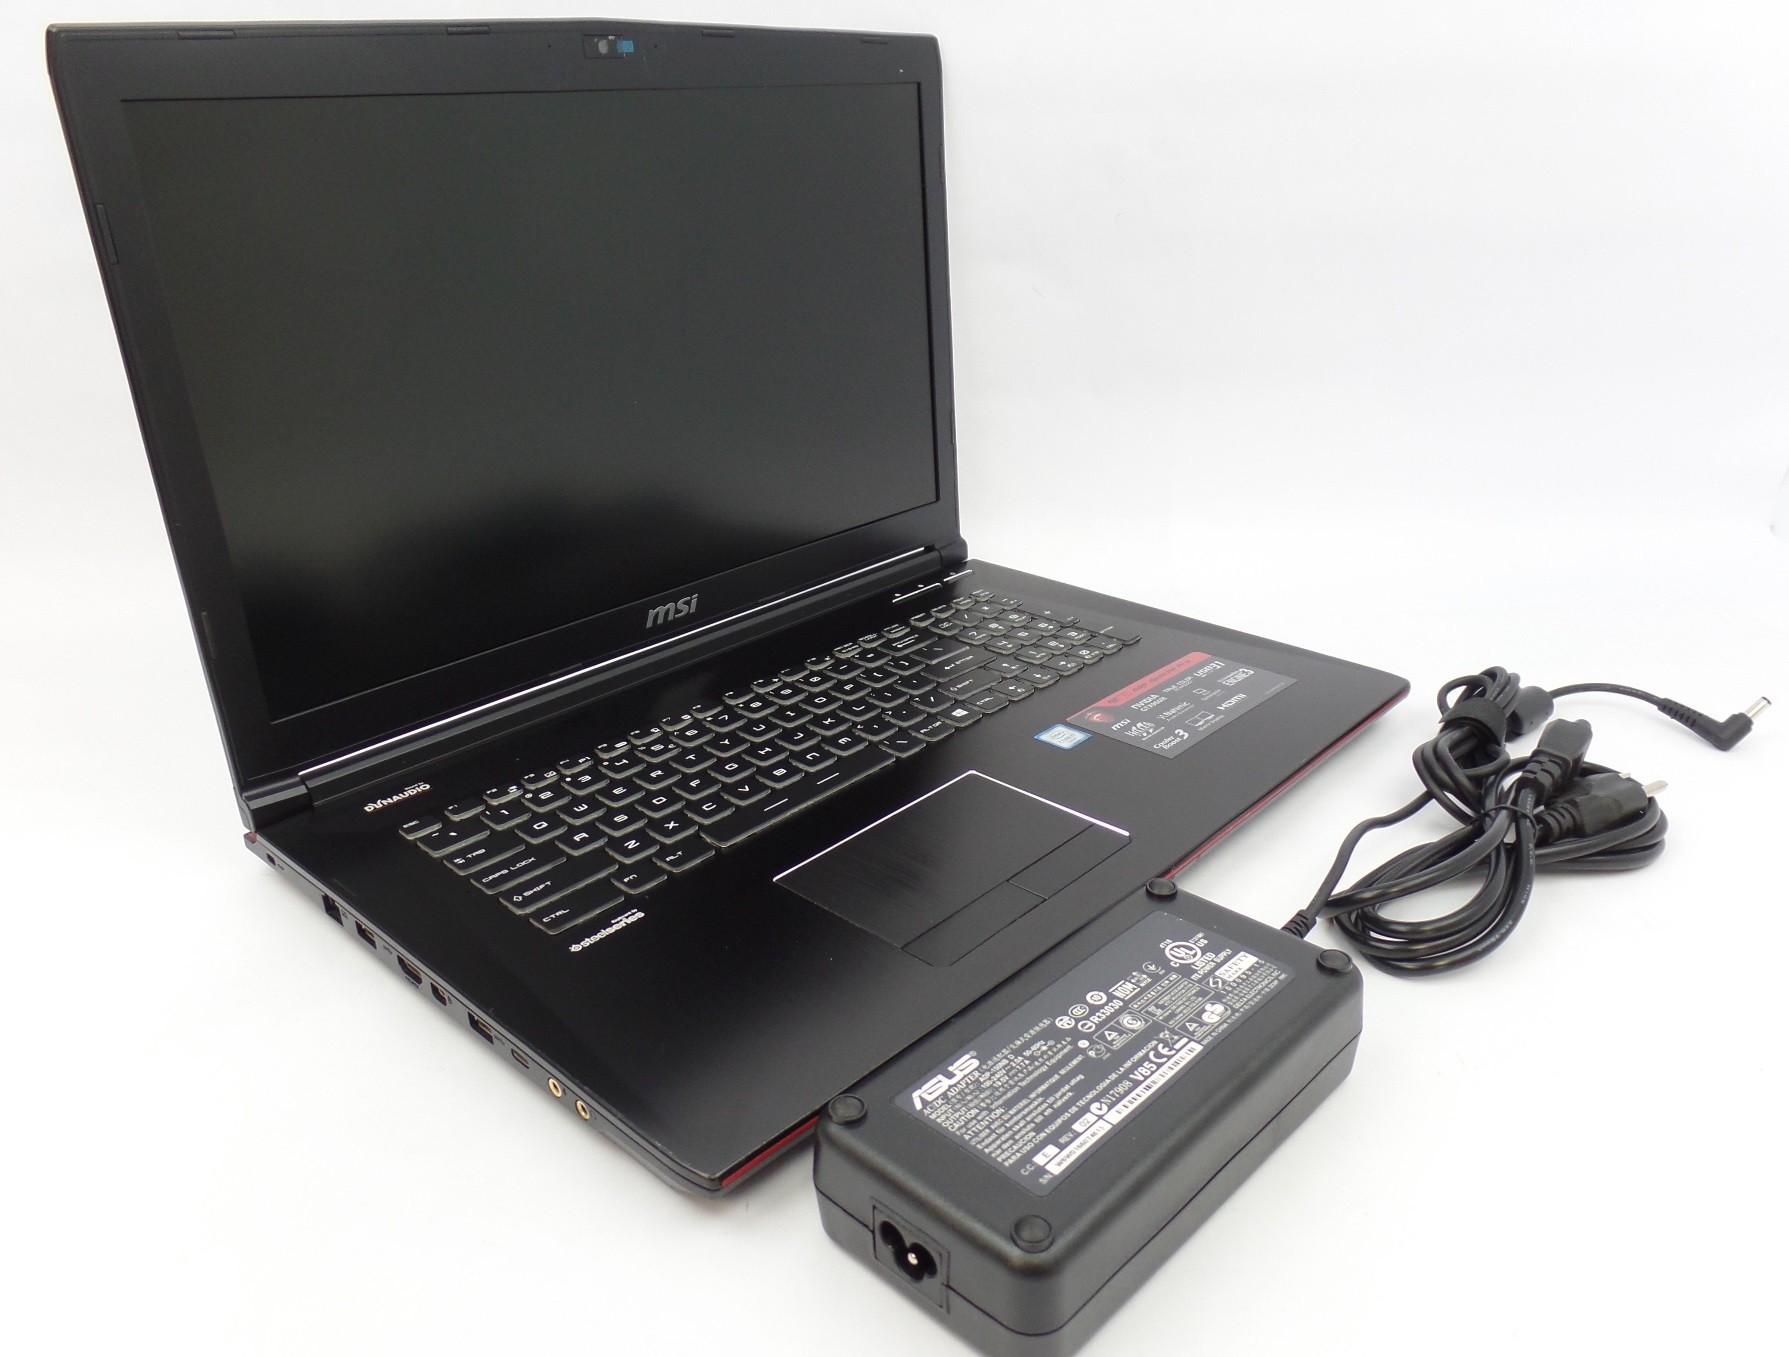 MSI GE72 6QD 17.3" FHD i7-6700HQ 16GB 1TB 128GB GTX 960M W10H Gaming Laptop